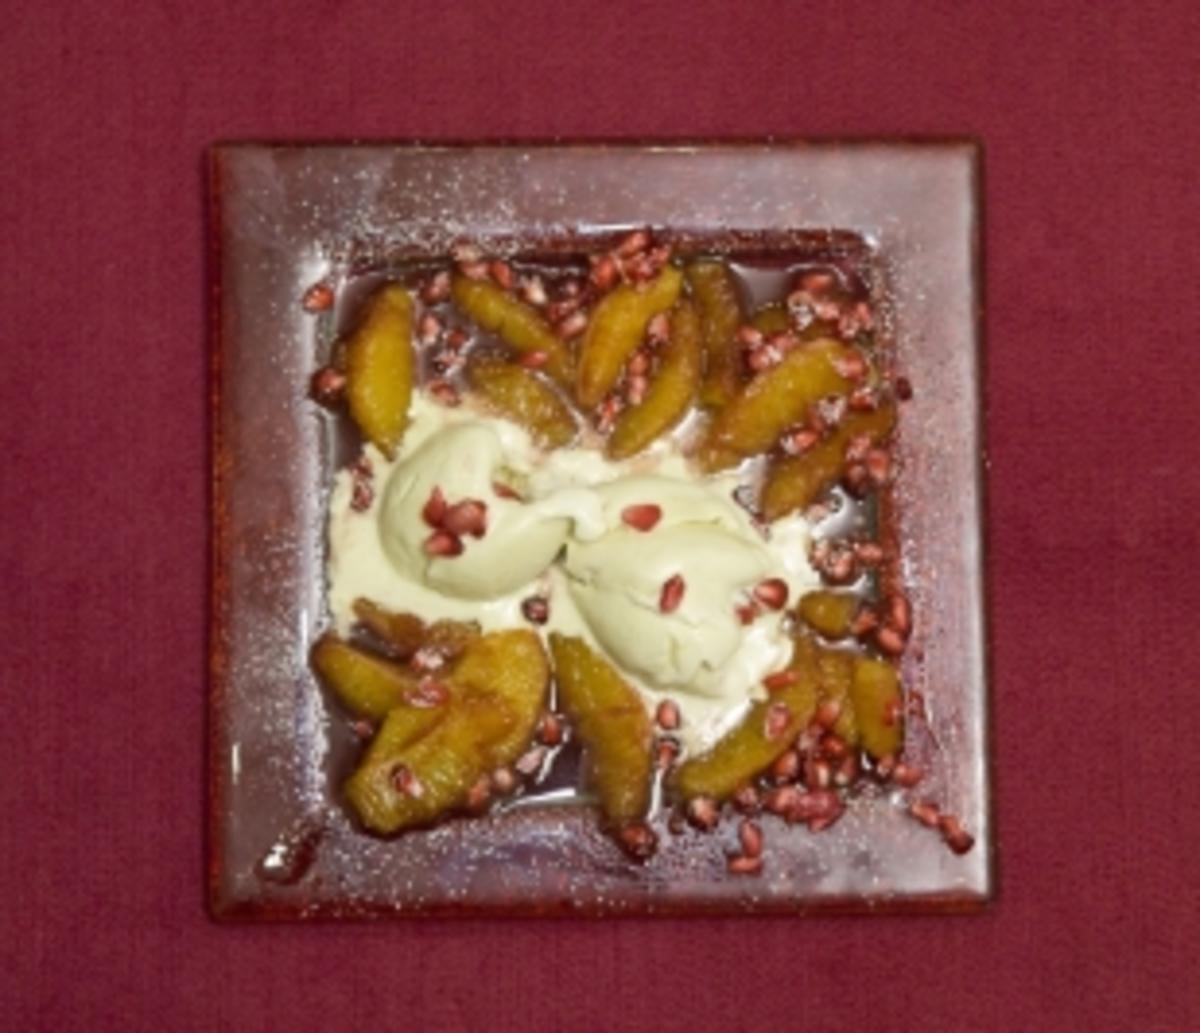 Fledermausgalle auf Transsilvanischem Filet mit süßen Blutstropfen (Eva Jacob) - Rezept